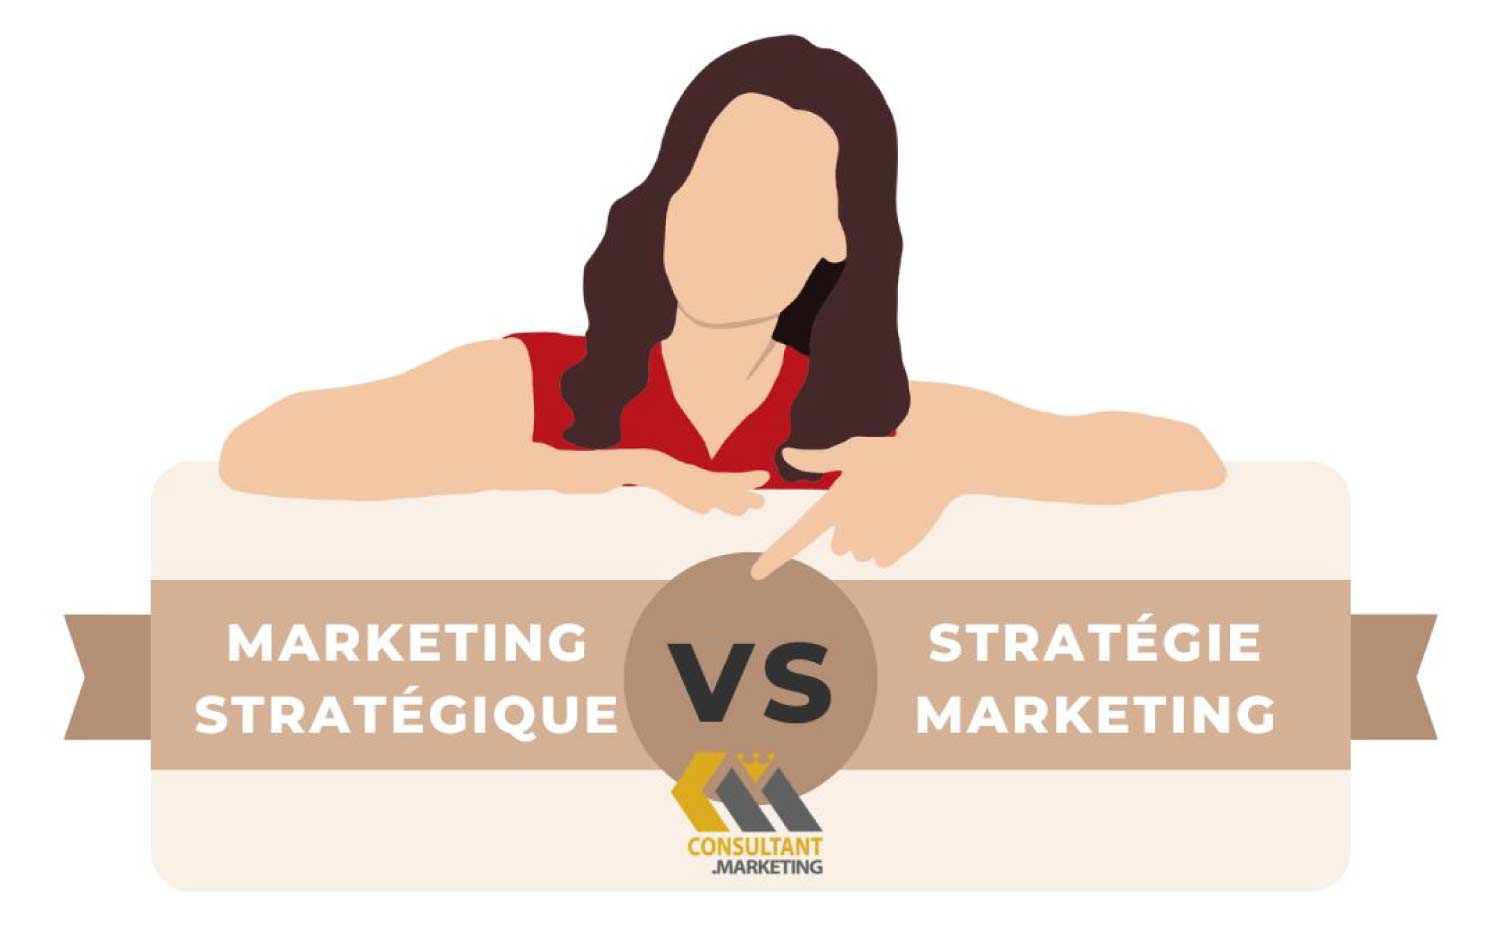 Le marketing stratégique est il différent de la stratégie marketing d’une entreprise?